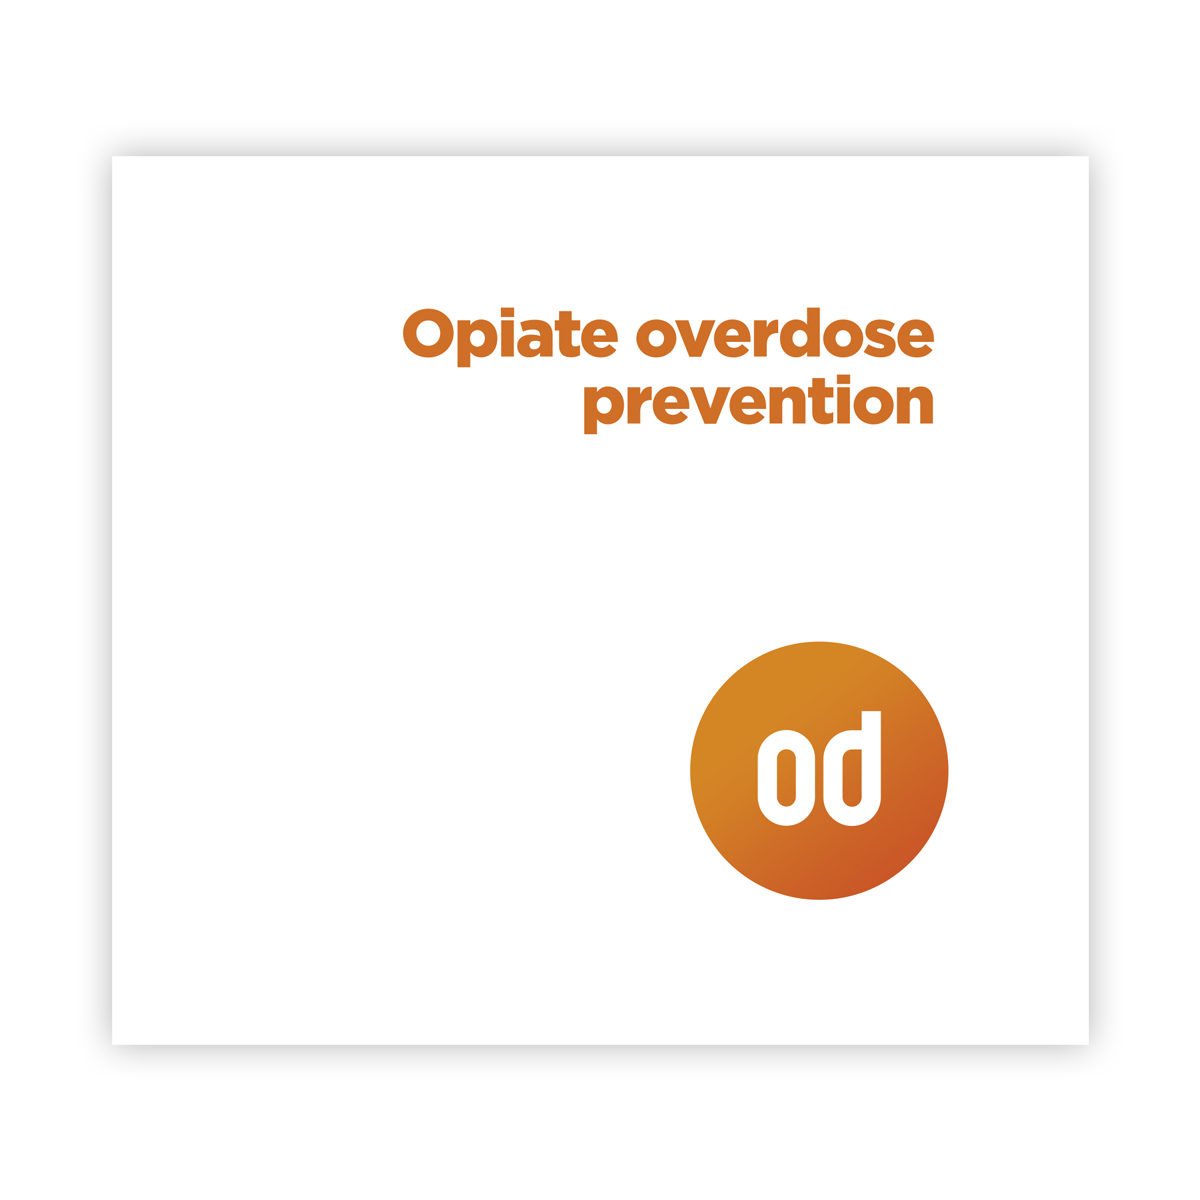 NEW EDITION: Opiate overdose prevention - a complete guide